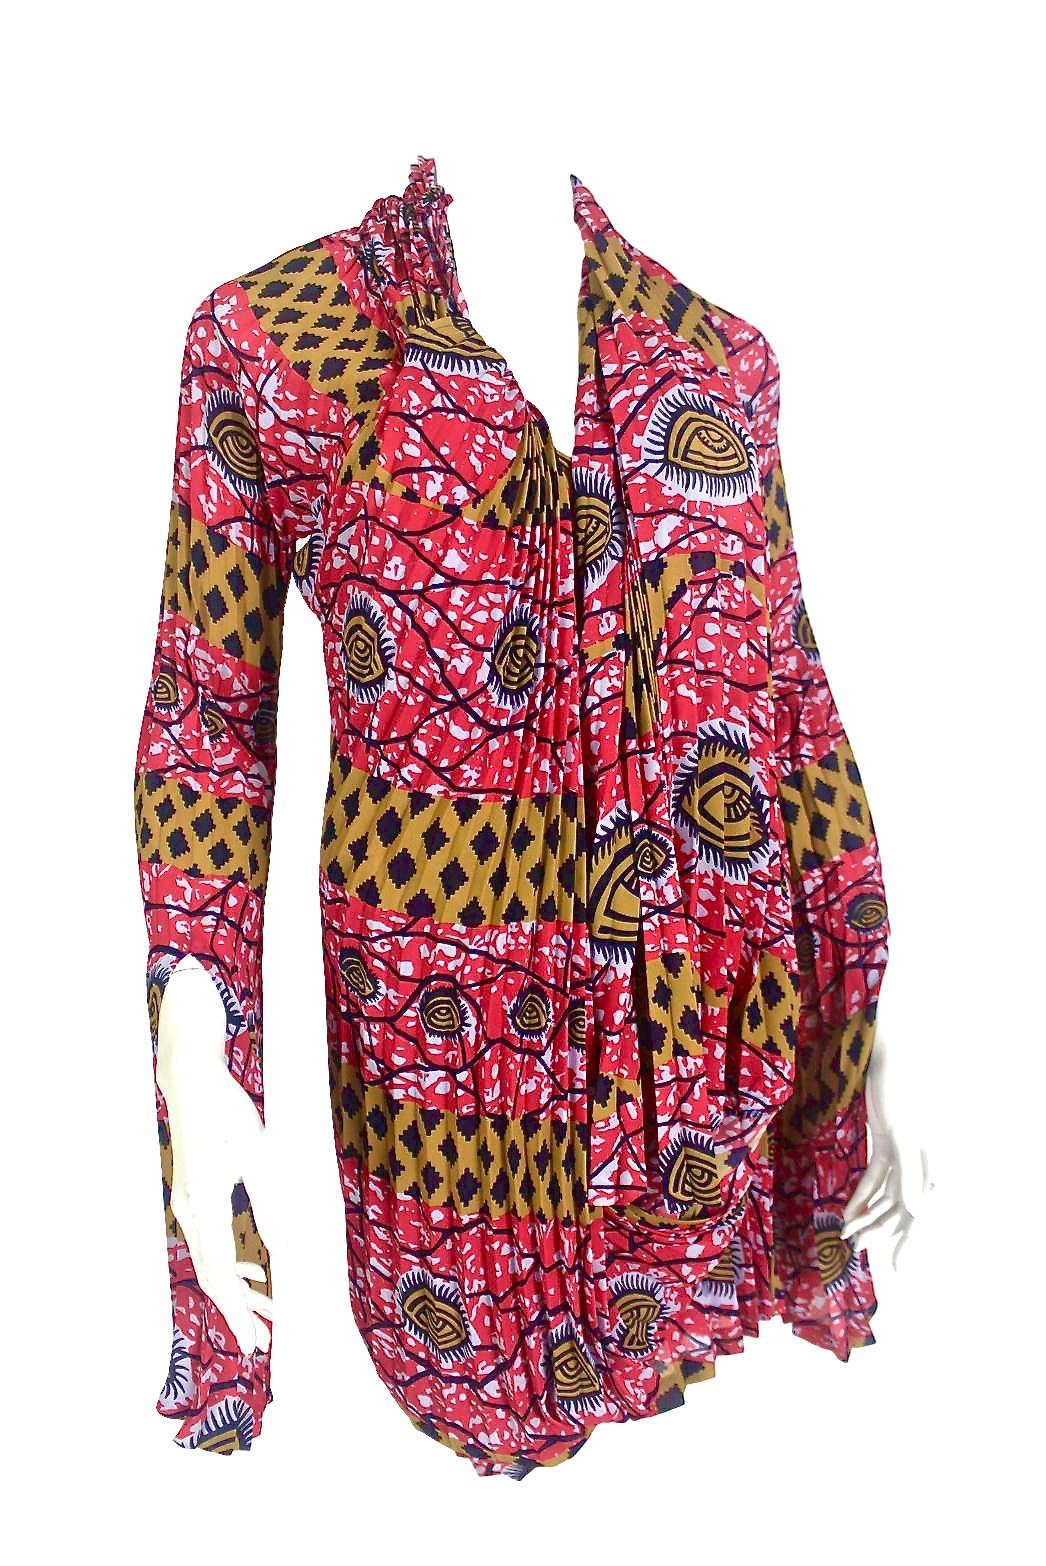 Comme des Garçons Junya Watanabe African Open Back Print Dress AD 2009 For Sale 2